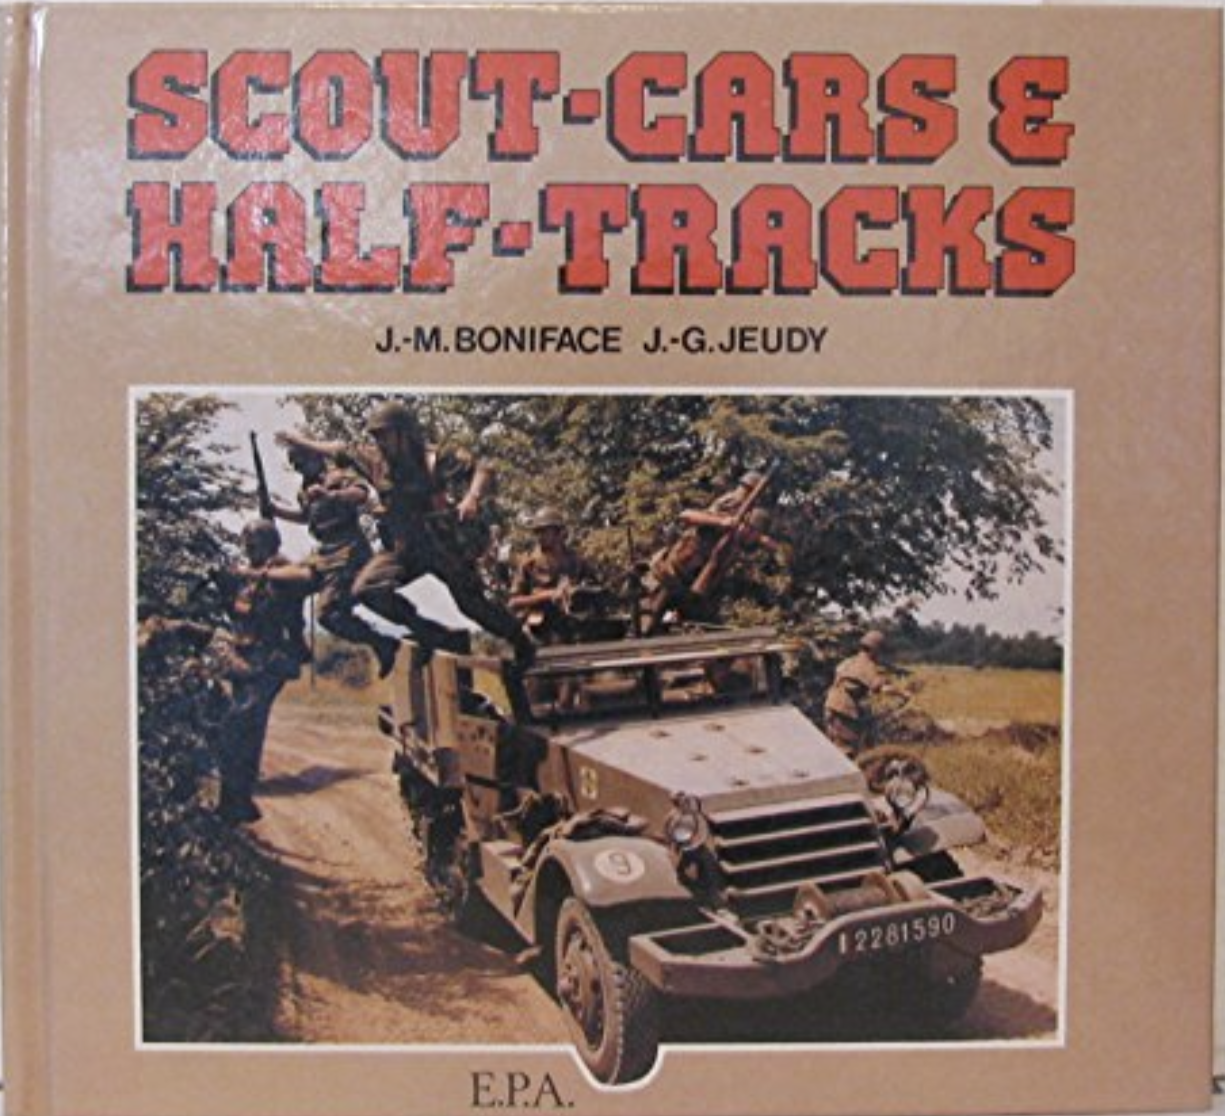 SCOUT-CARS E HALF-TRUCKS